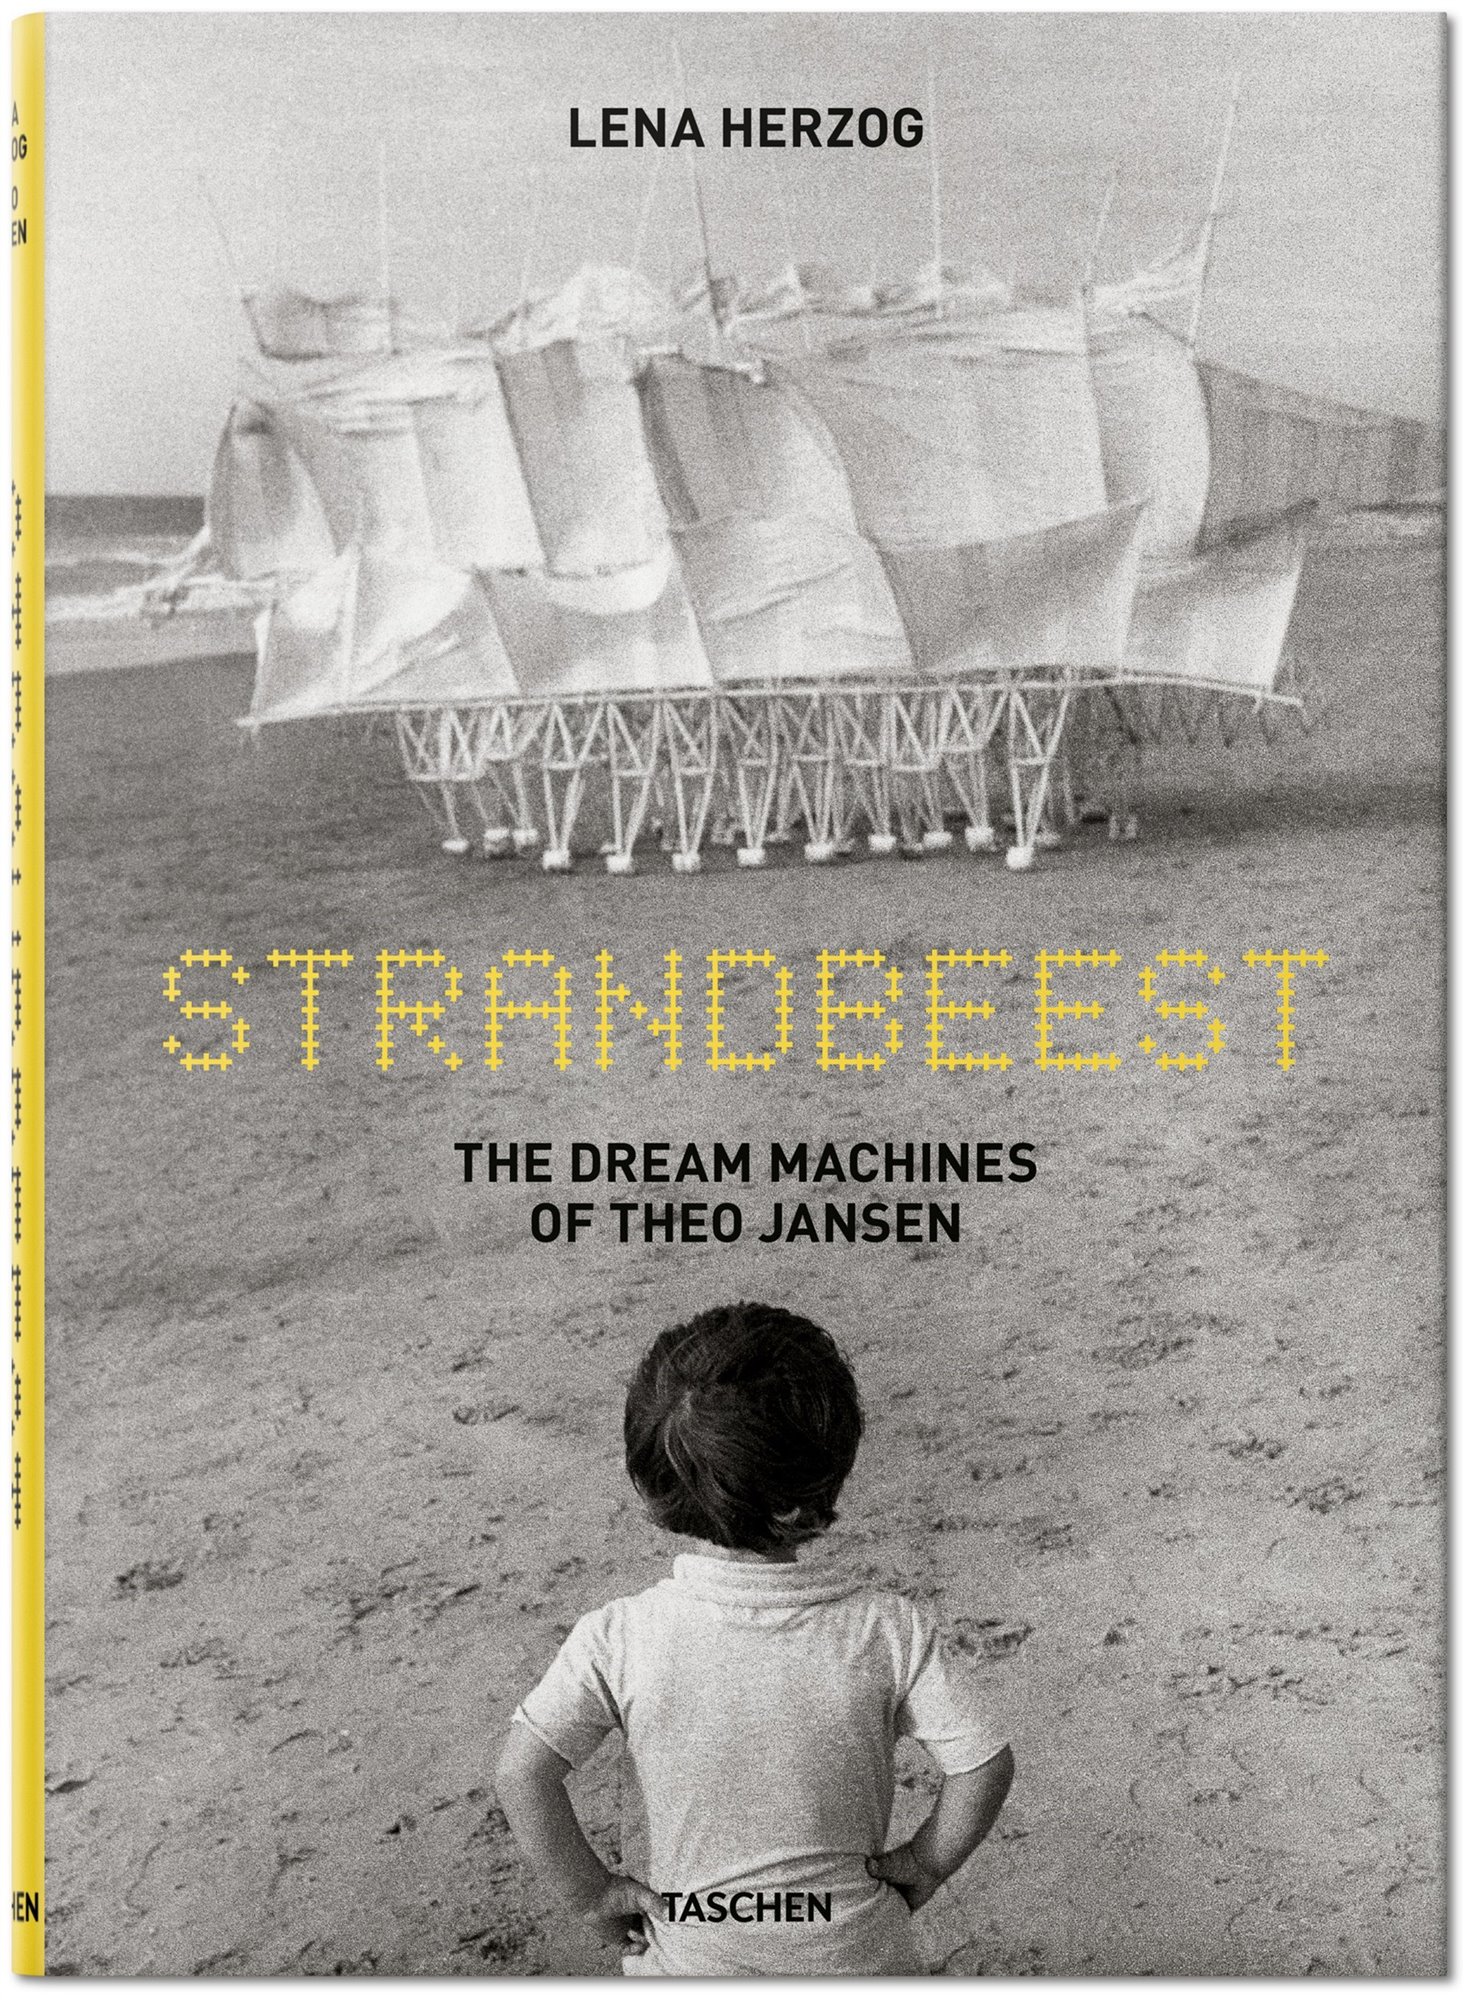 Libro Taschen Strandbeest. The Dream Machines of Theo Jansen. Portada del libro Strandbeest. The Dream Machines of Theo Jansen